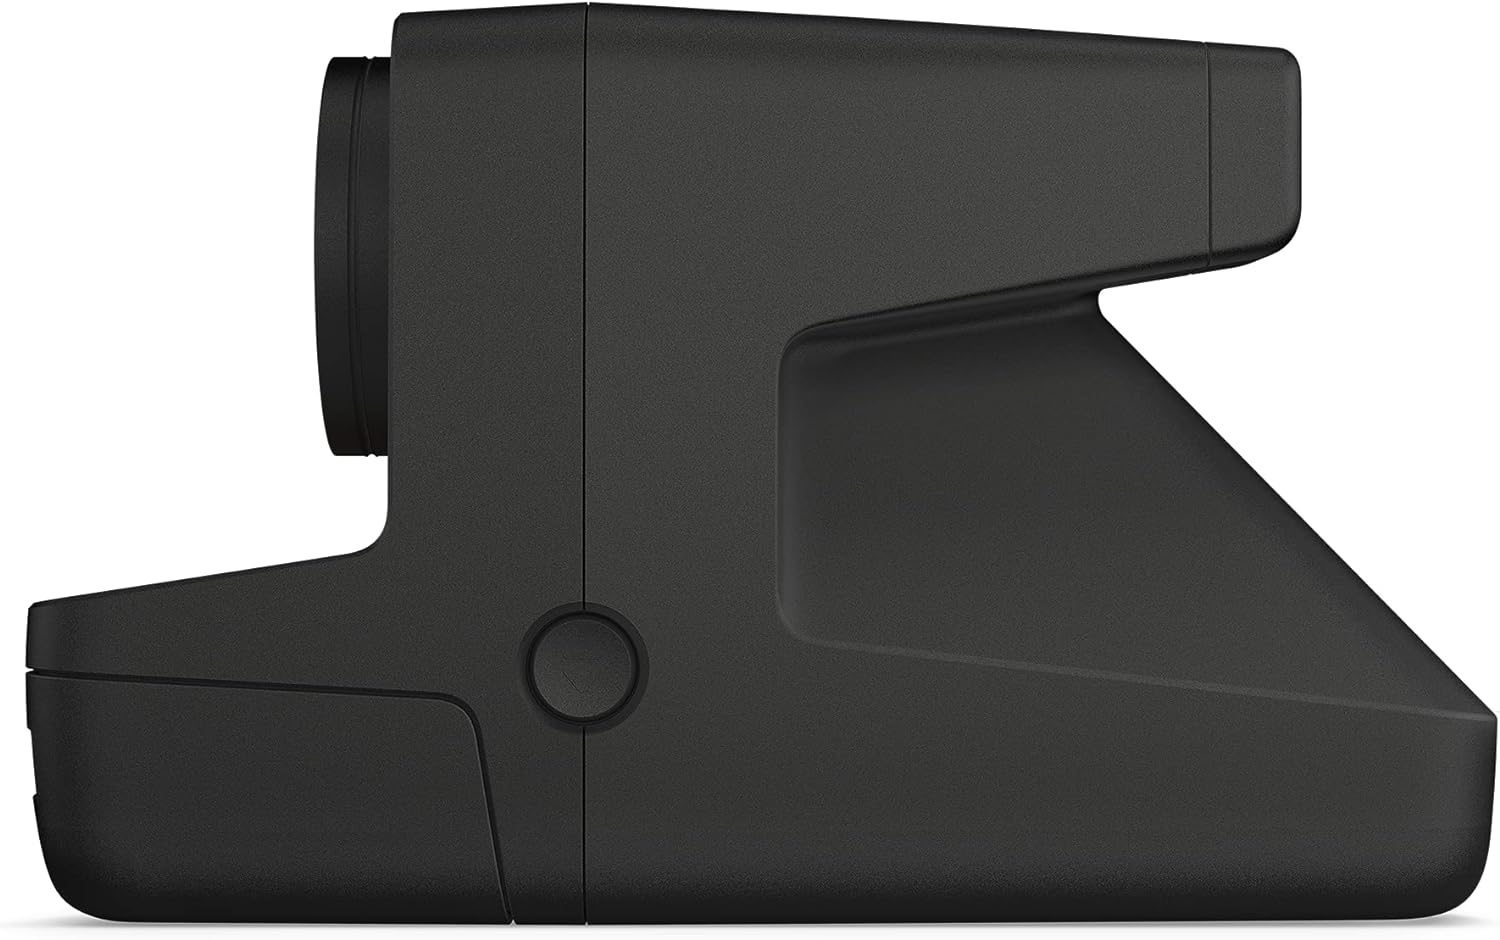 Polaroid Open Box Polaroid Now I-Type Instant Camera Black (9124) - BLACK